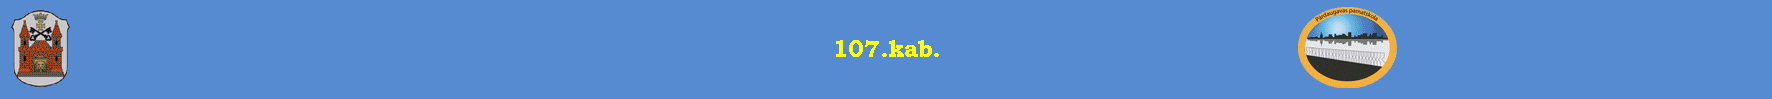 107.kab.